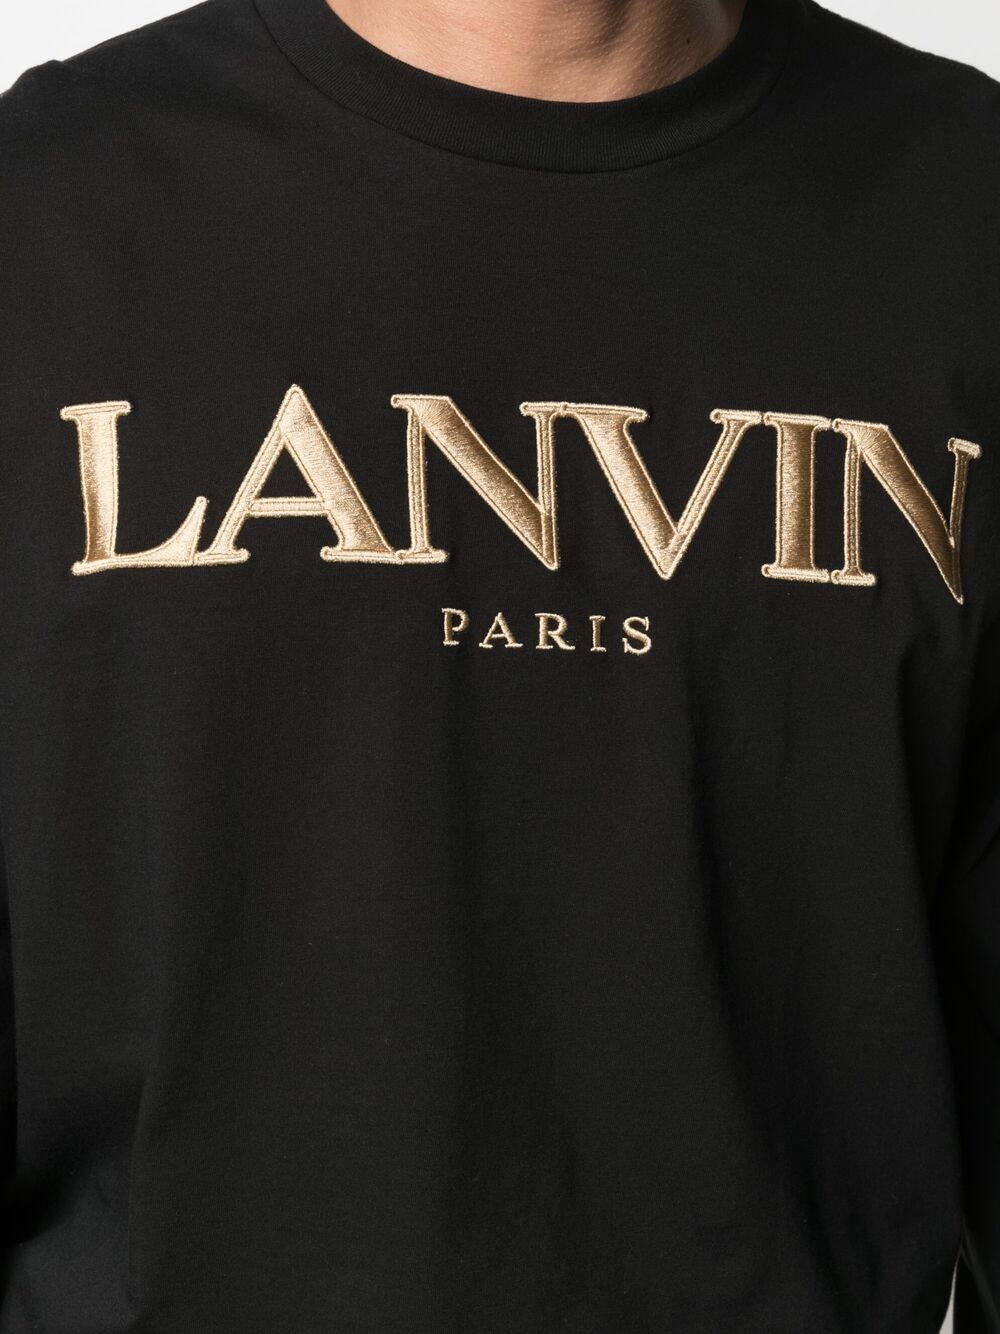 фото Lanvin толстовка с вышитым логотипом